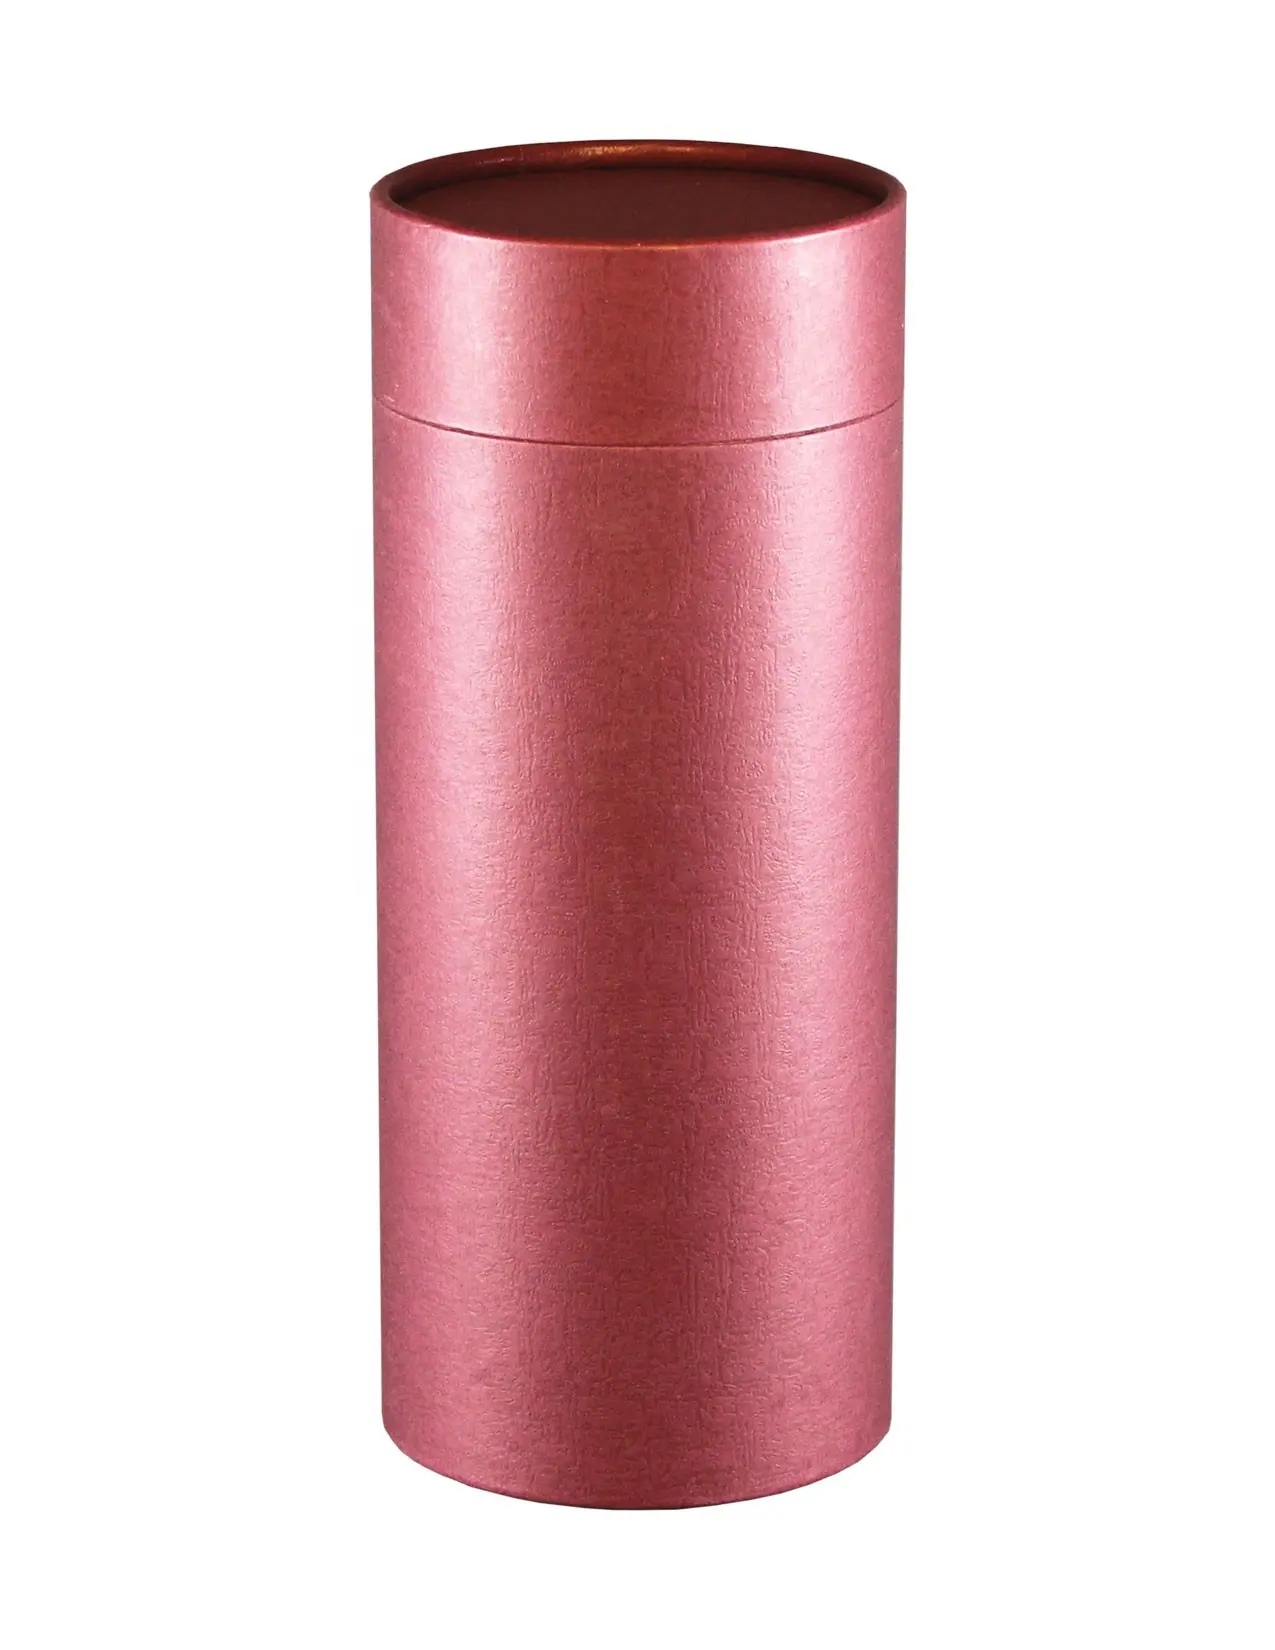 Scattering tube urn Biodegradable Urns Pink